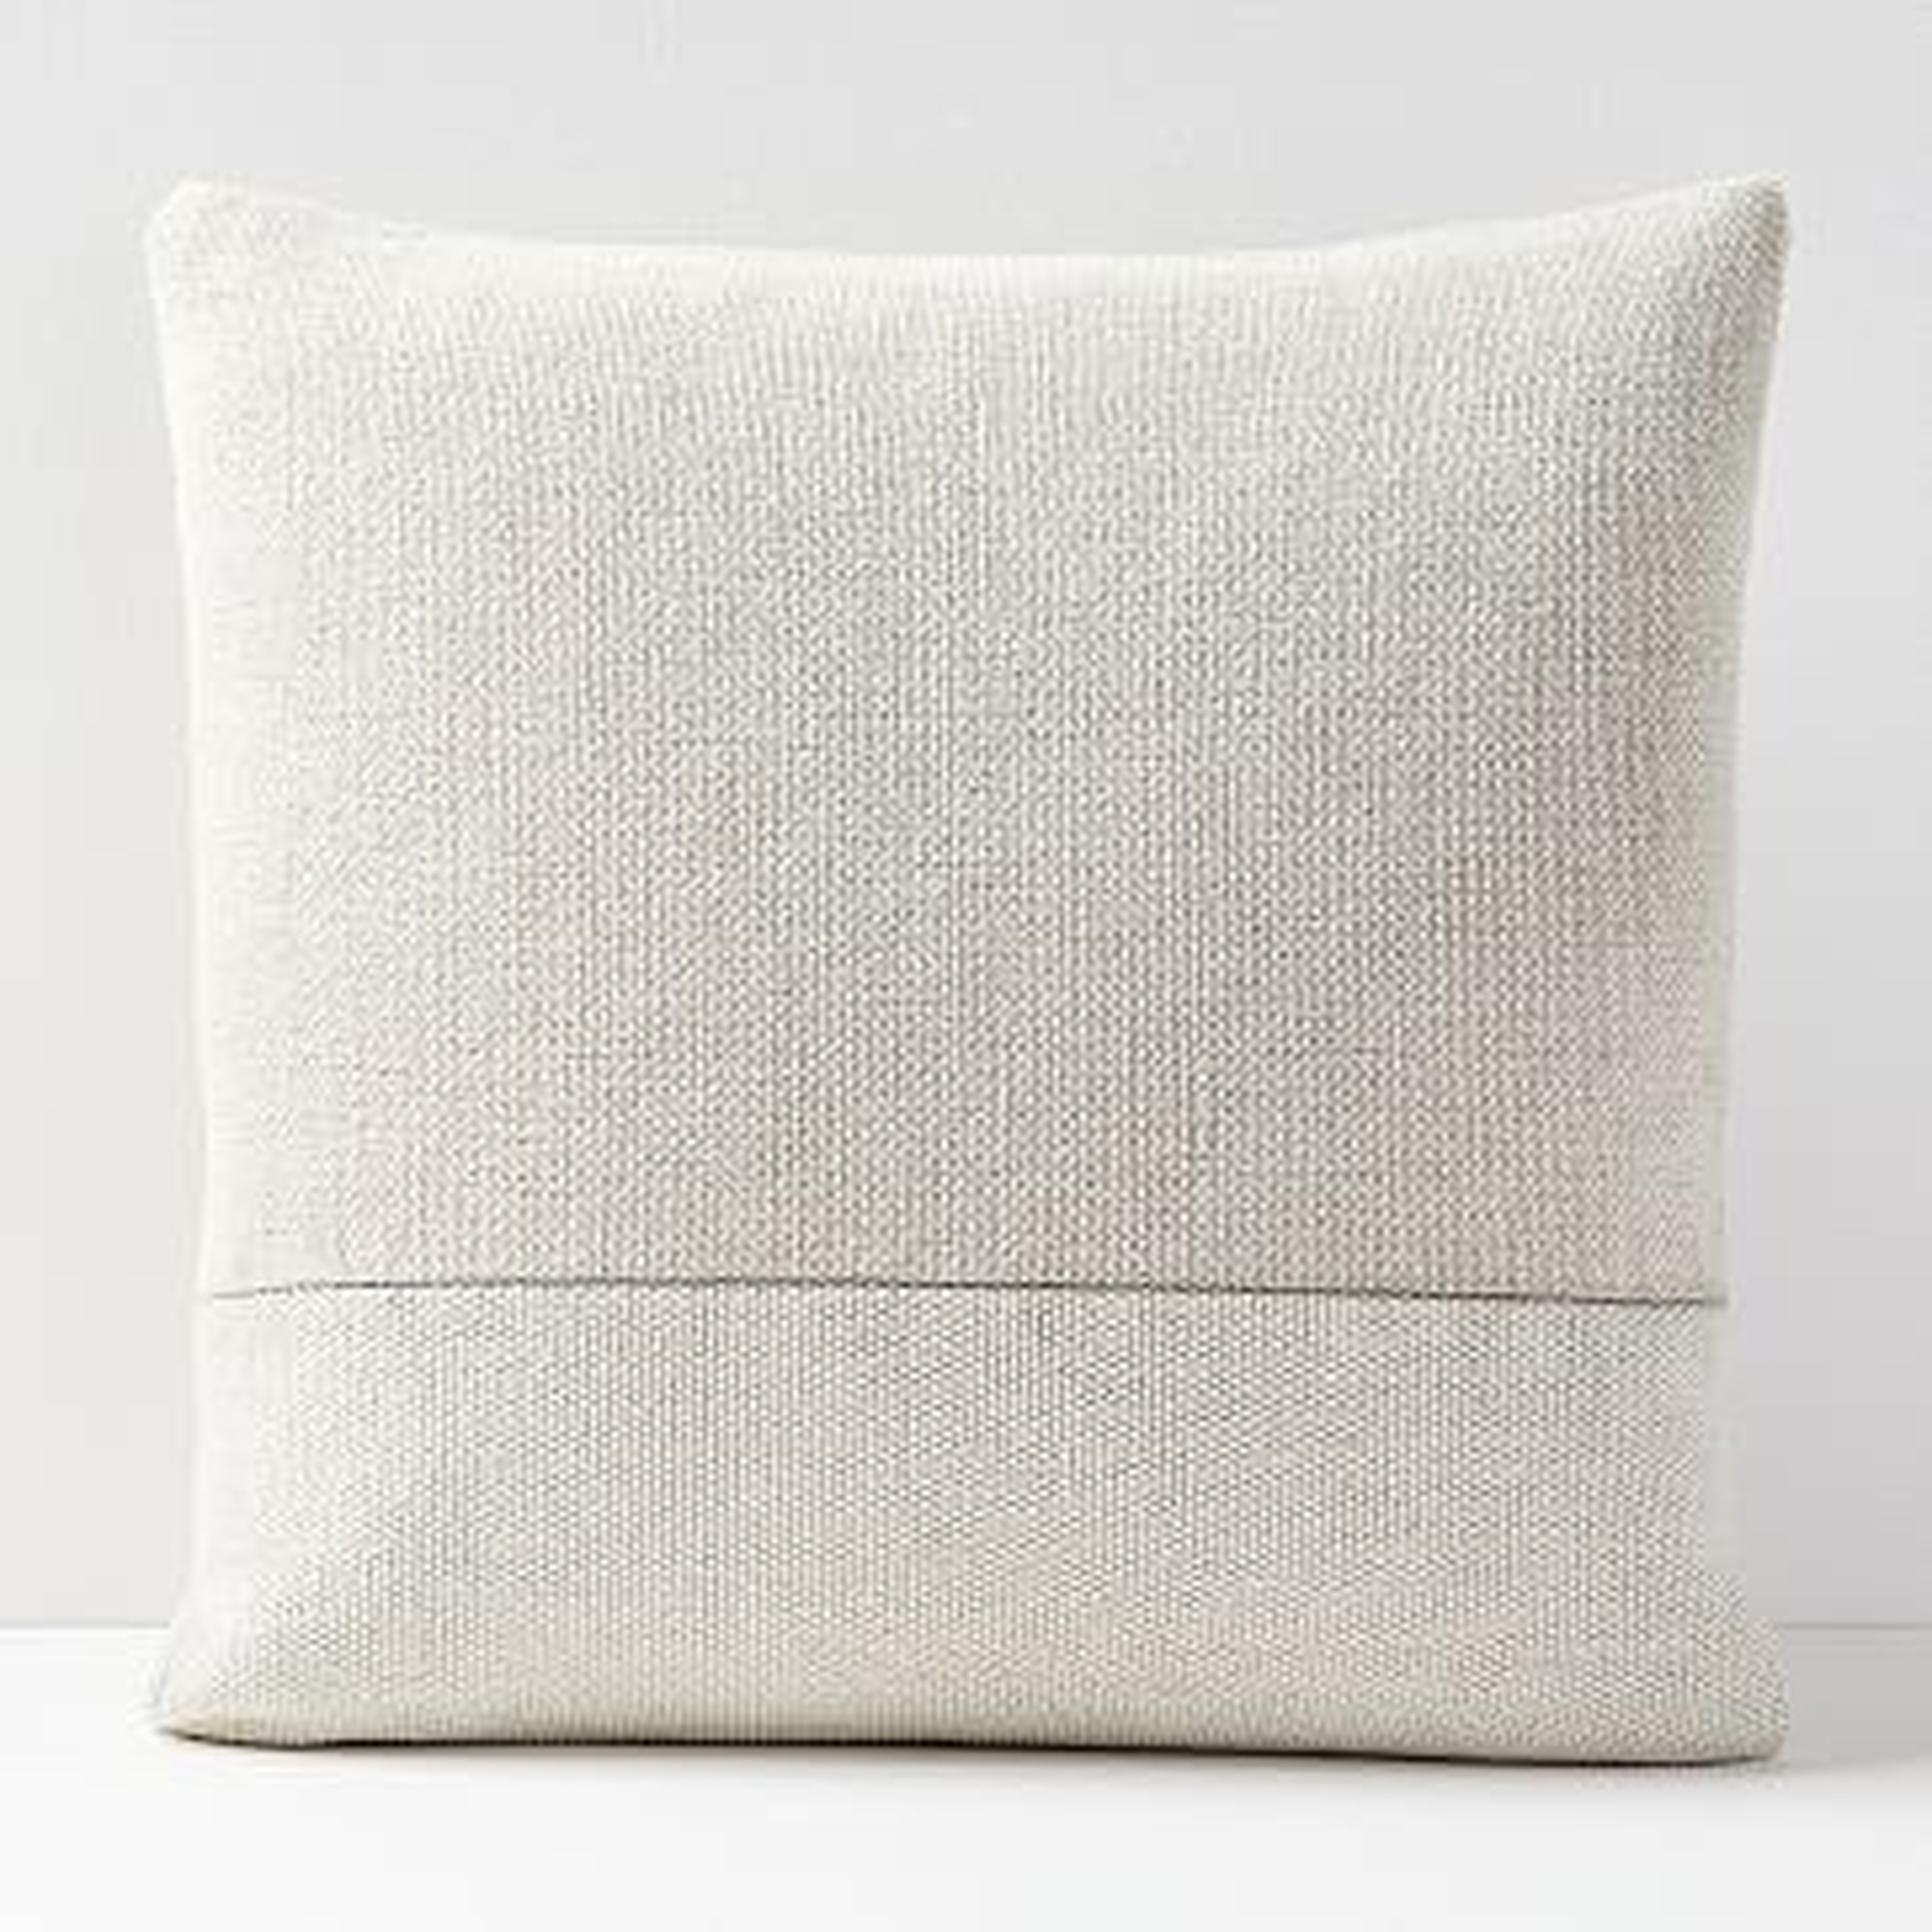 Cotton Canvas Pillow Cover, white - West Elm